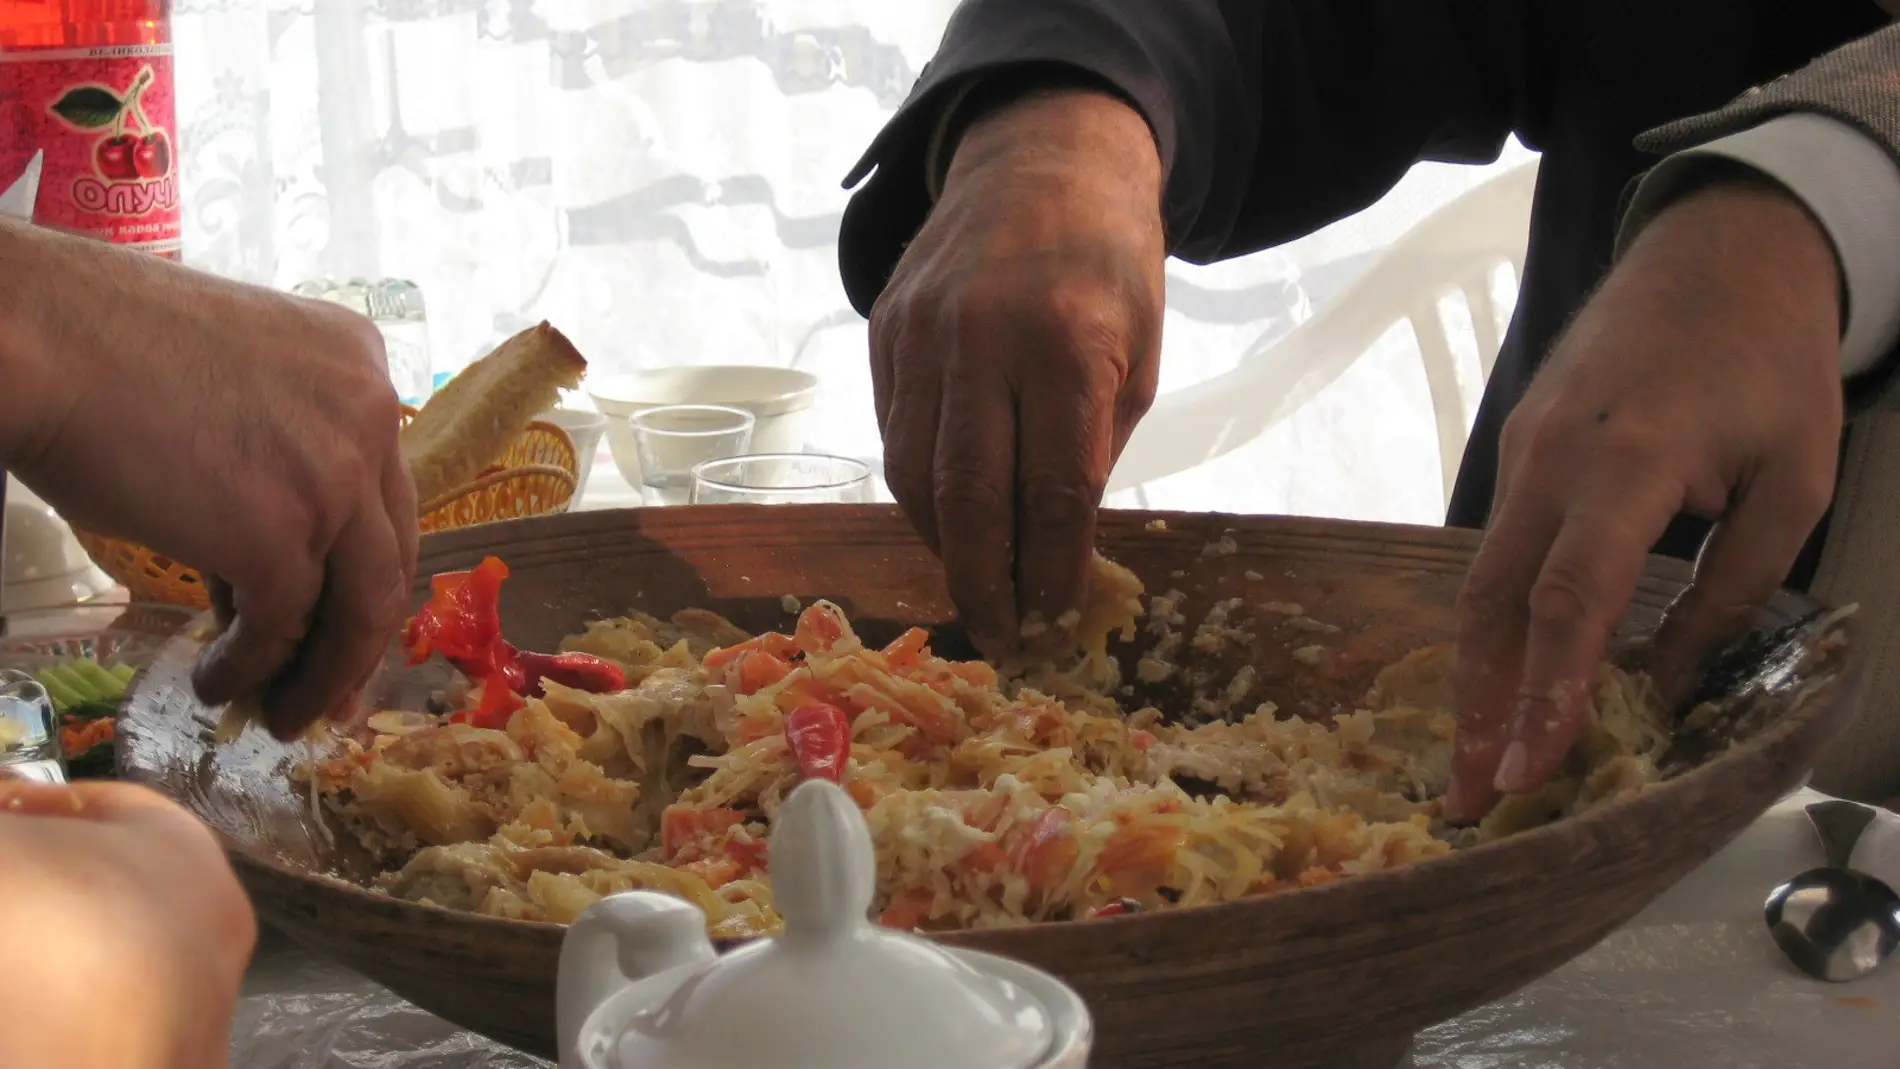 Что интересного есть на беру. Обед плов. Узбеки едят плов руками. Плов на столе. Еда которую едят руками.